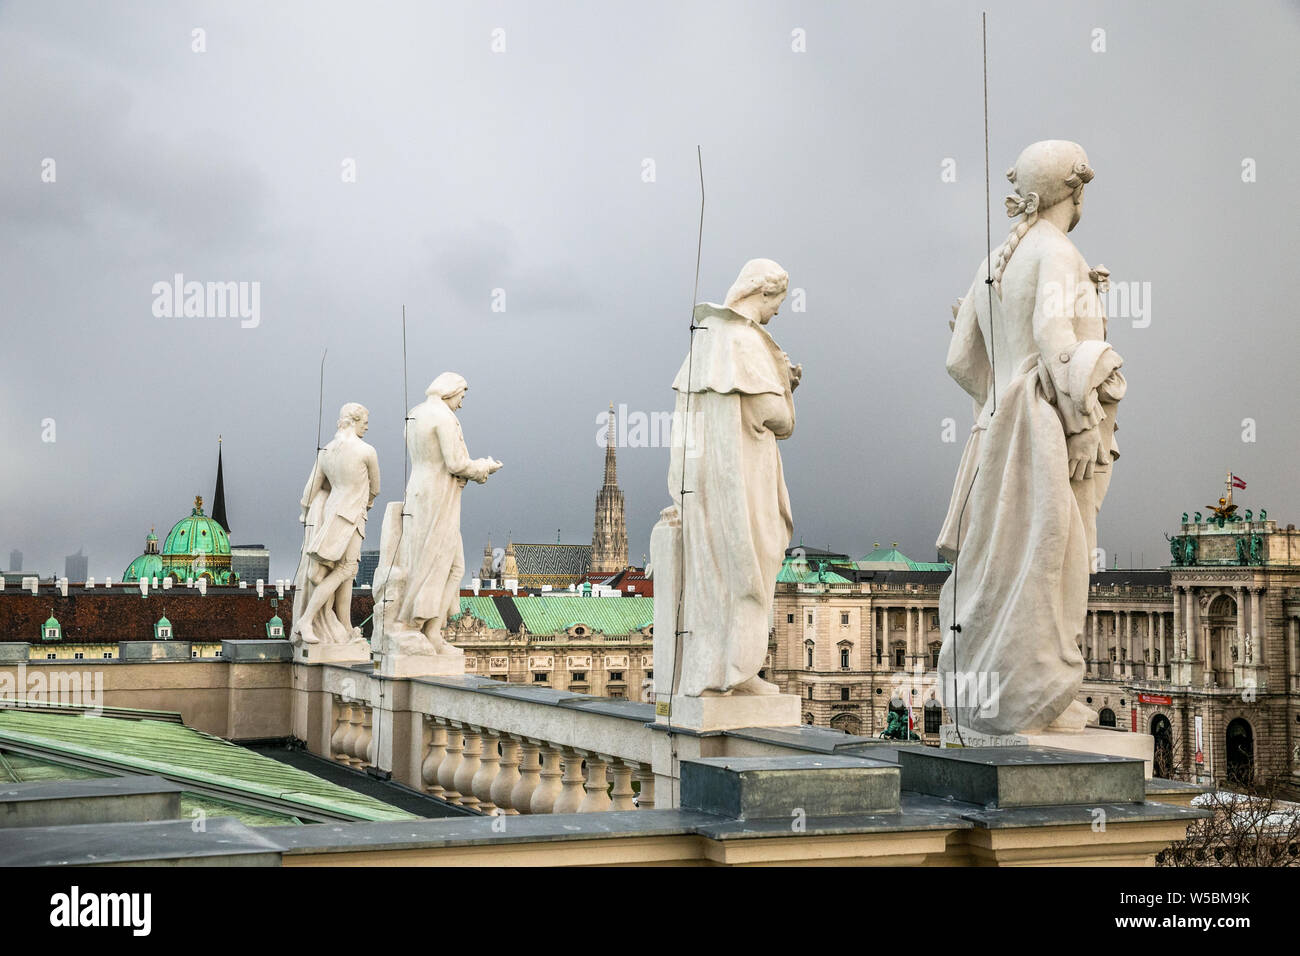 Statuen von berühmten Wissenschaftlern, auf dem Dach des Naturhistorischen Museums Ansicht mit einem schönen Stadtbild in Wien, Österreich. Stockfoto